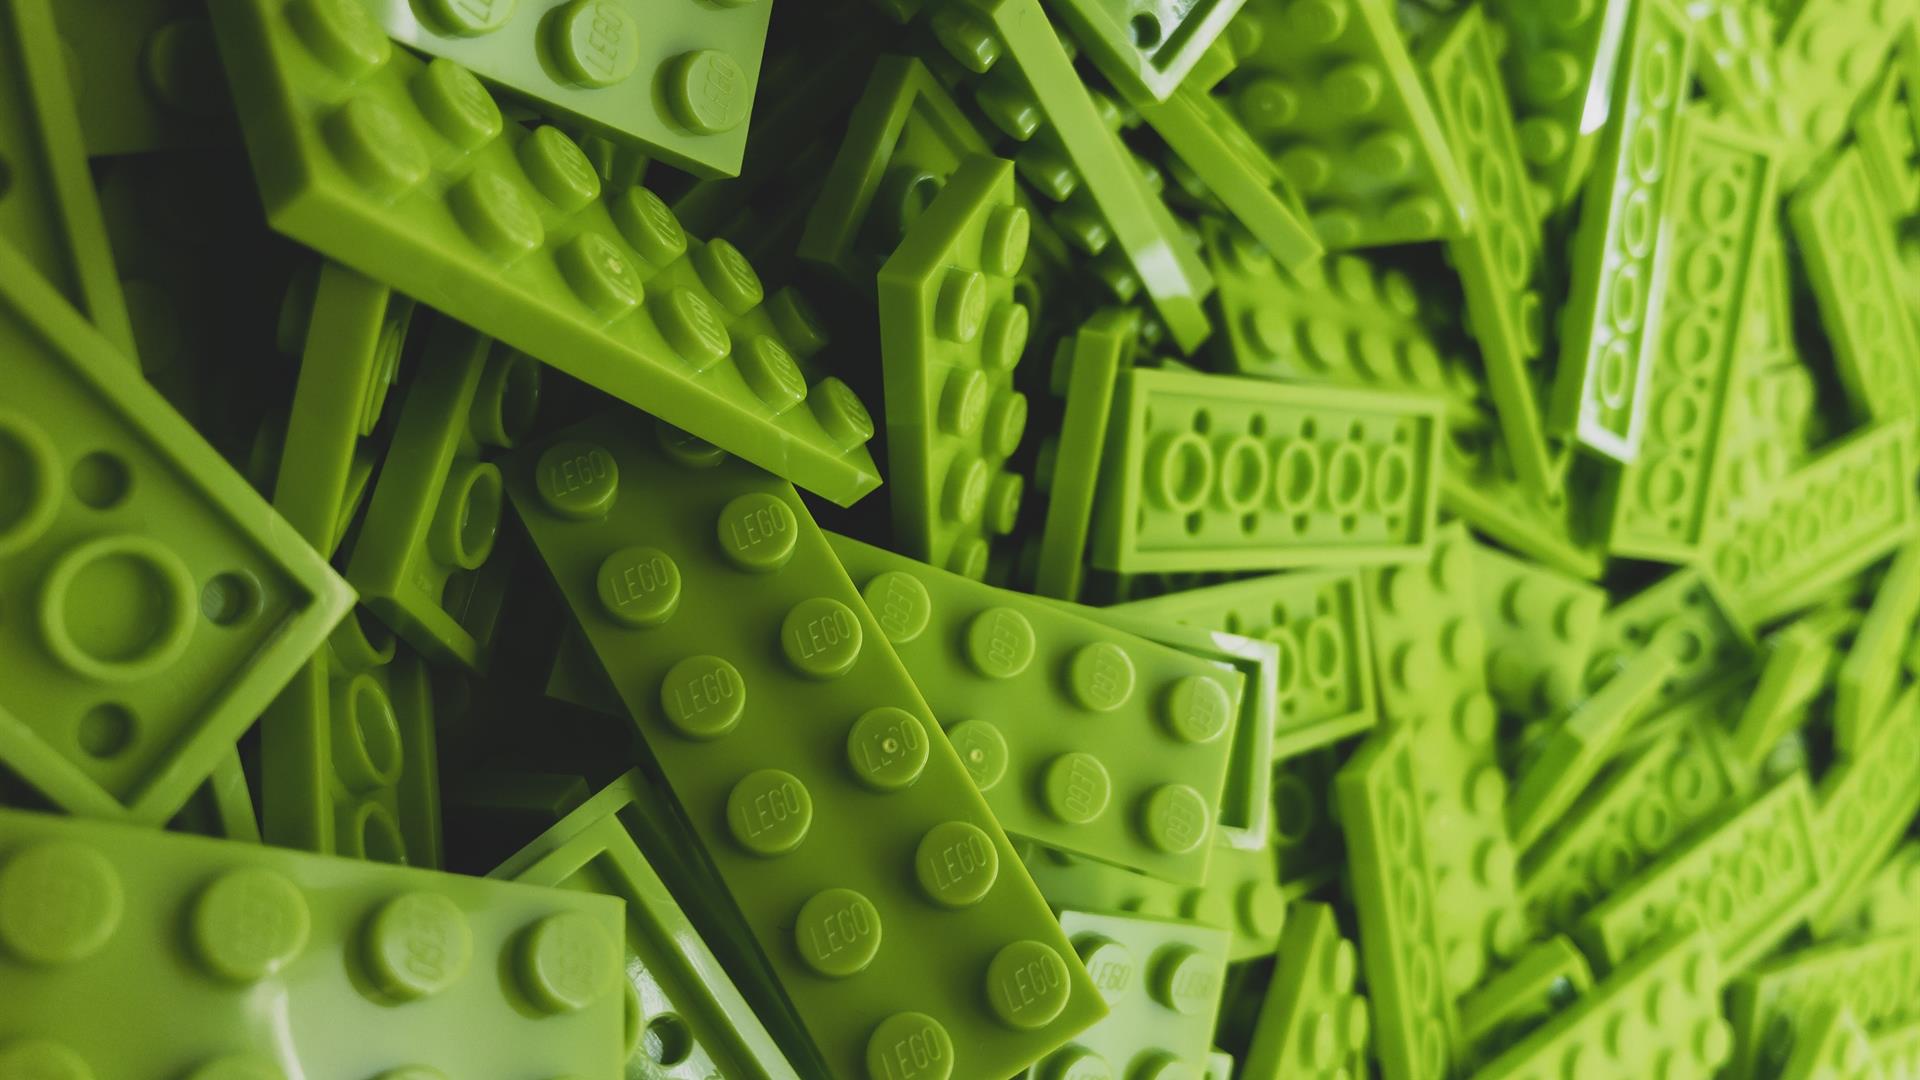 Greg Rosenke Green Lego Unsplash